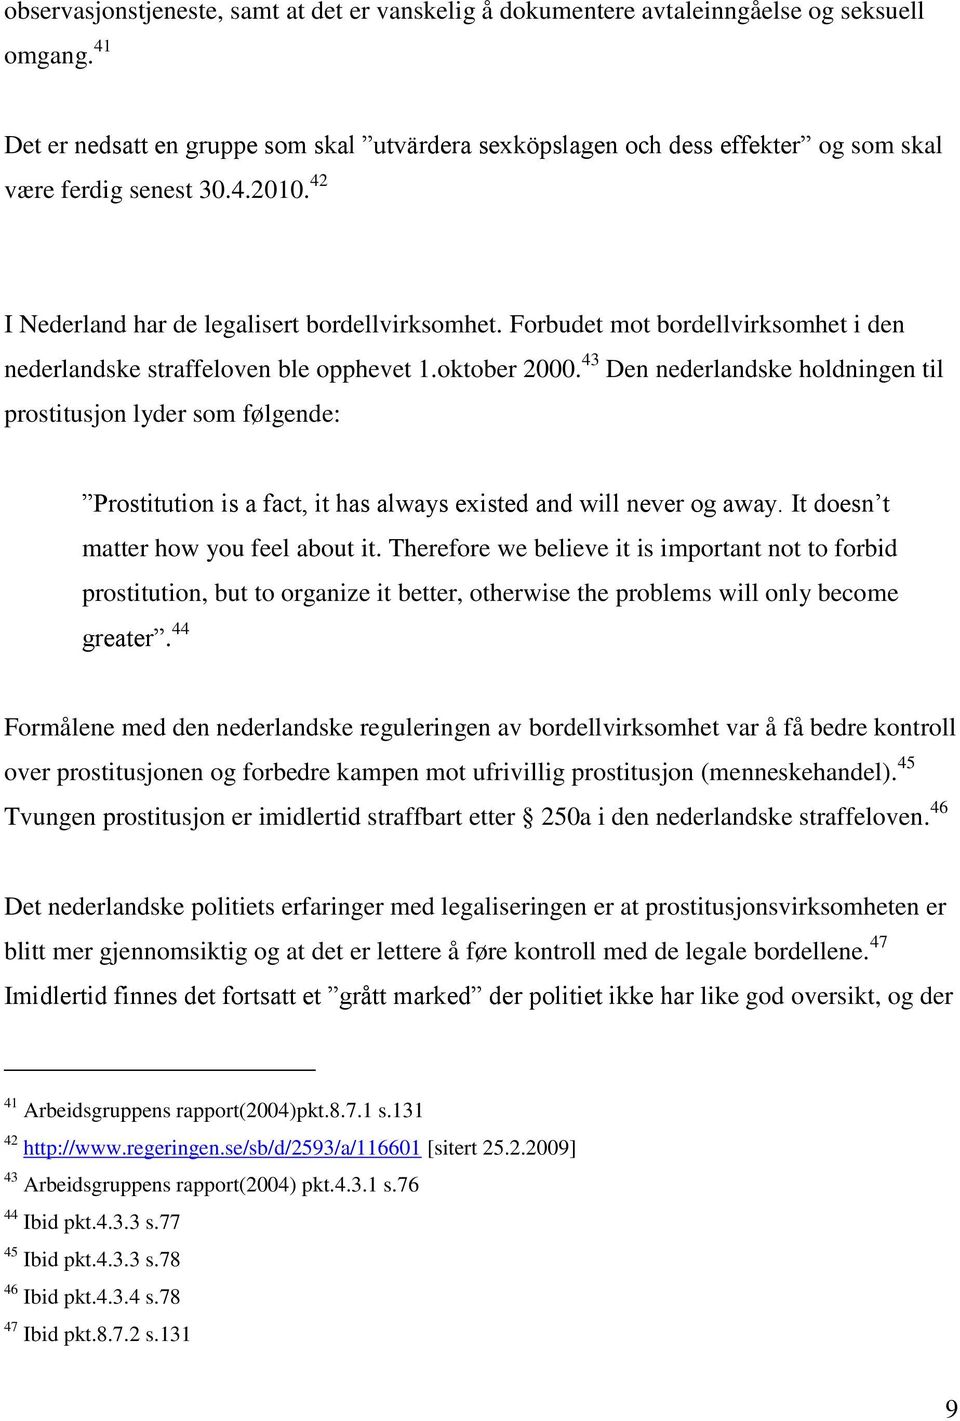 Forbudet mot bordellvirksomhet i den nederlandske straffeloven ble opphevet 1.oktober 2000.